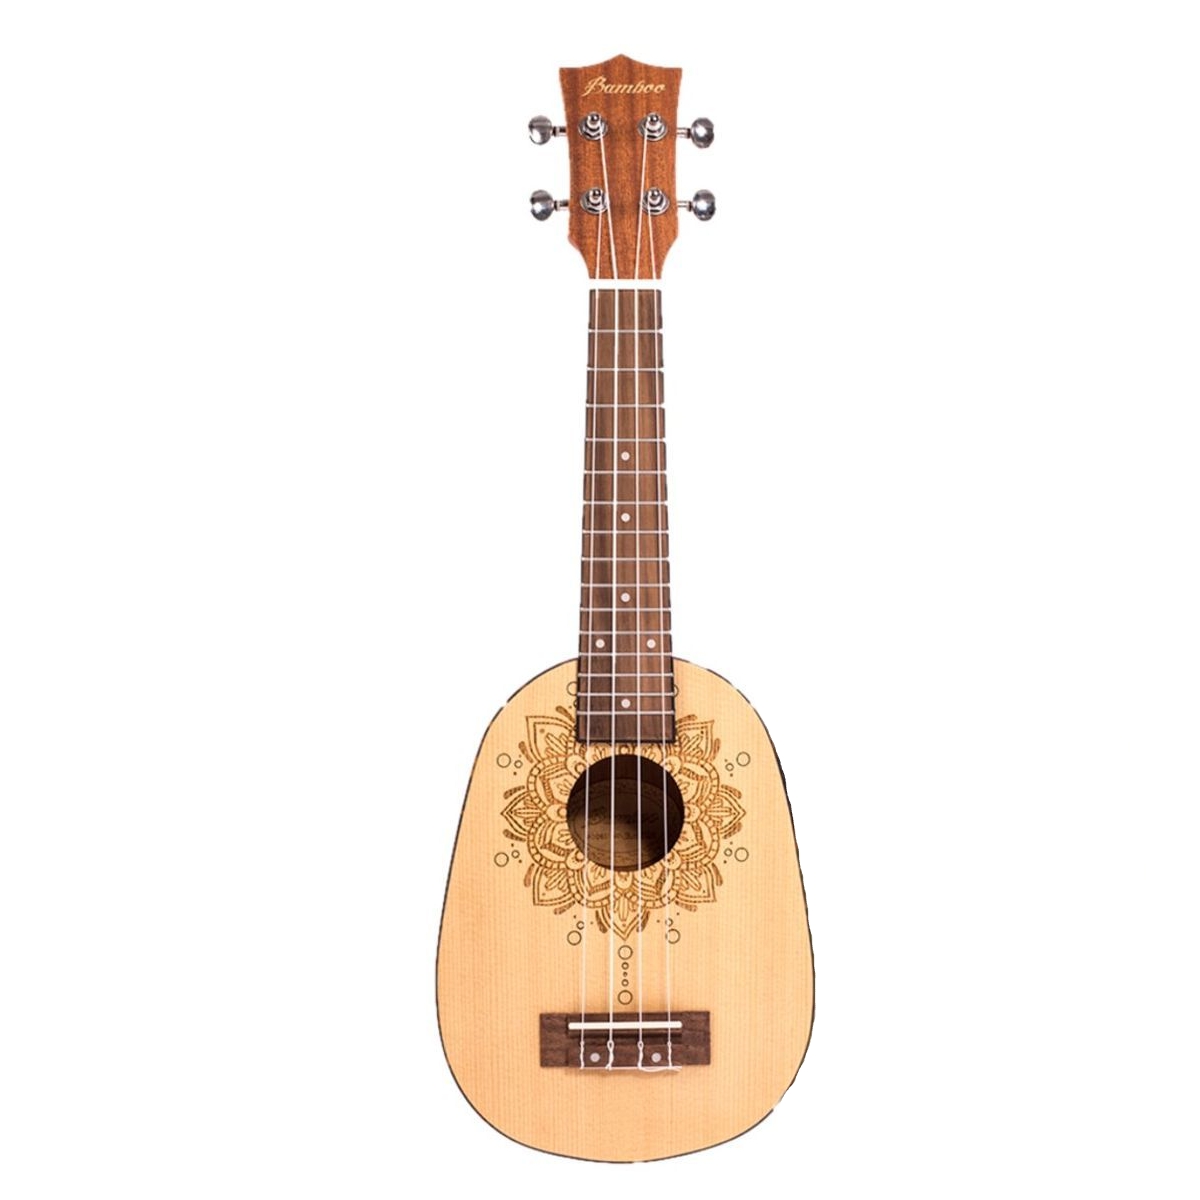 Укулеле Bamboo BU-21 Honolulu портативный гитара укулеле скрипка деревянный подставка крюк